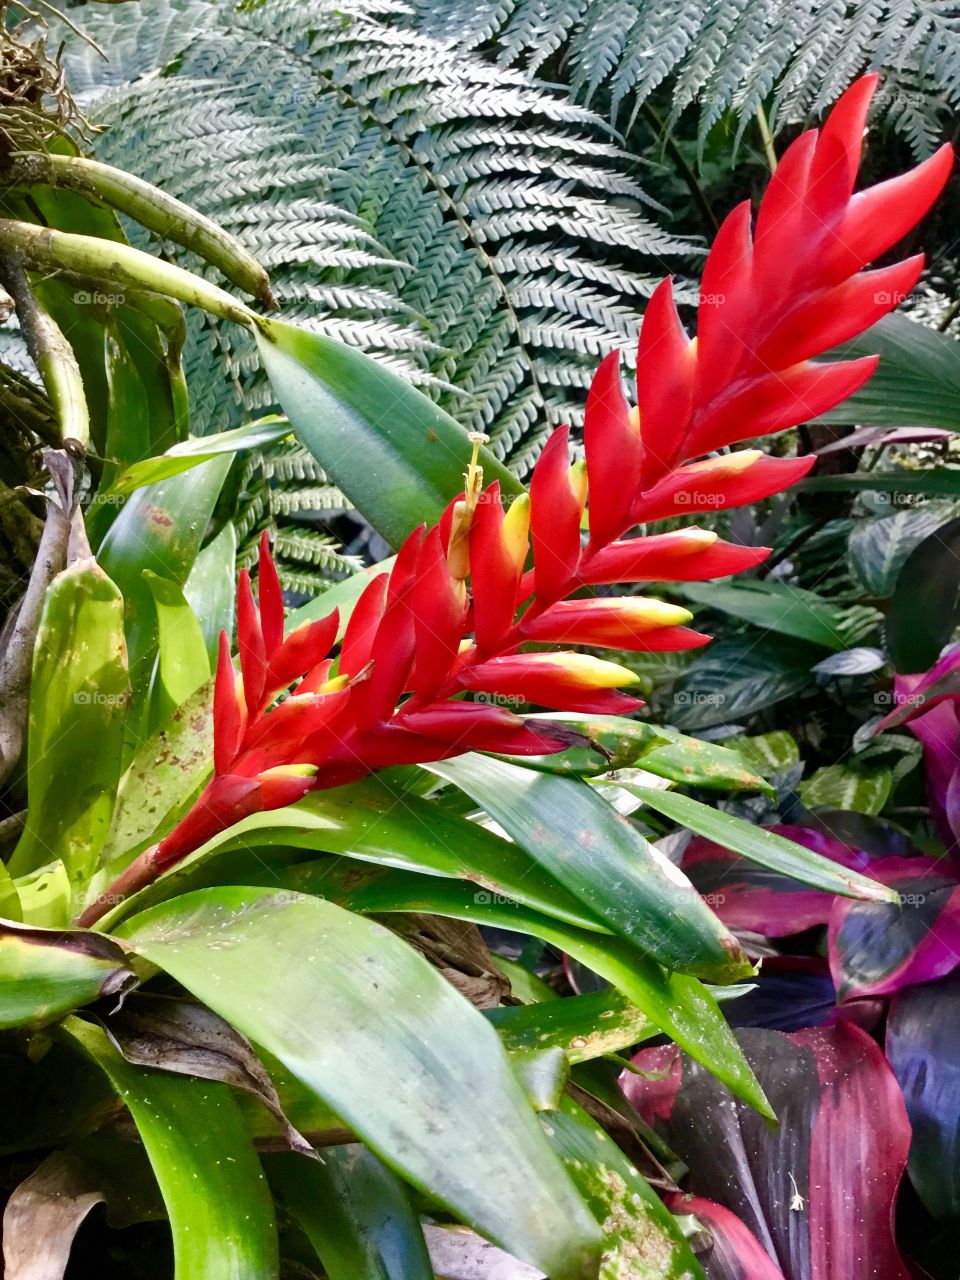 At Hawaii Tropical Botanical Garden